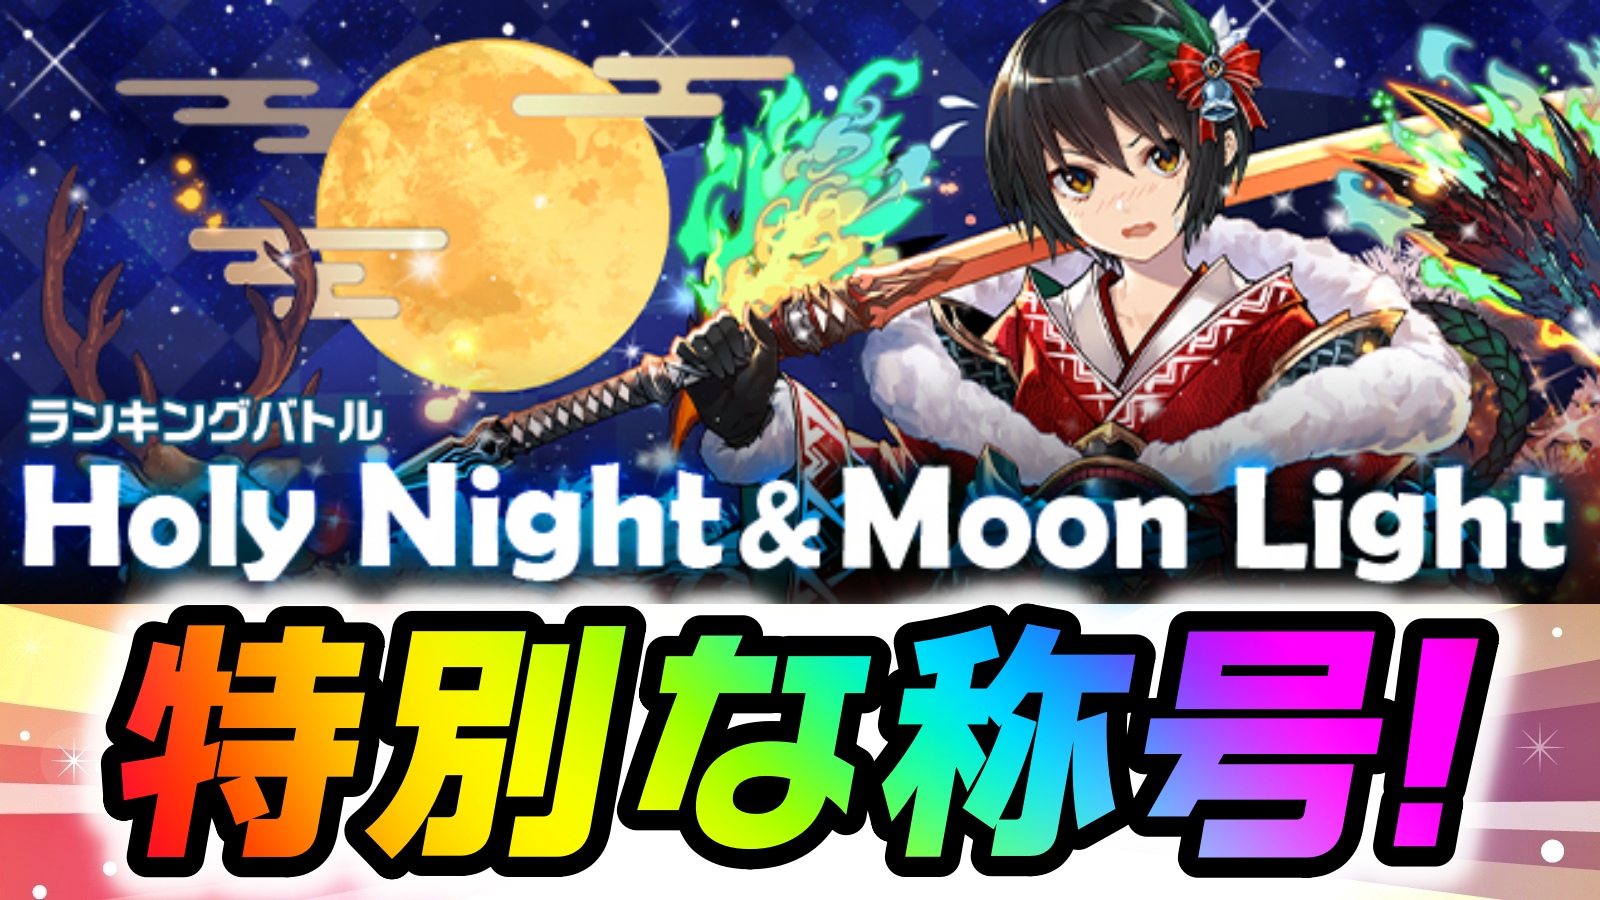 【パズドラ】クリスマスの特別な称号をゲットしよう! ランキングバトル「Holy Night & Moon Light」開催!【パズバト】